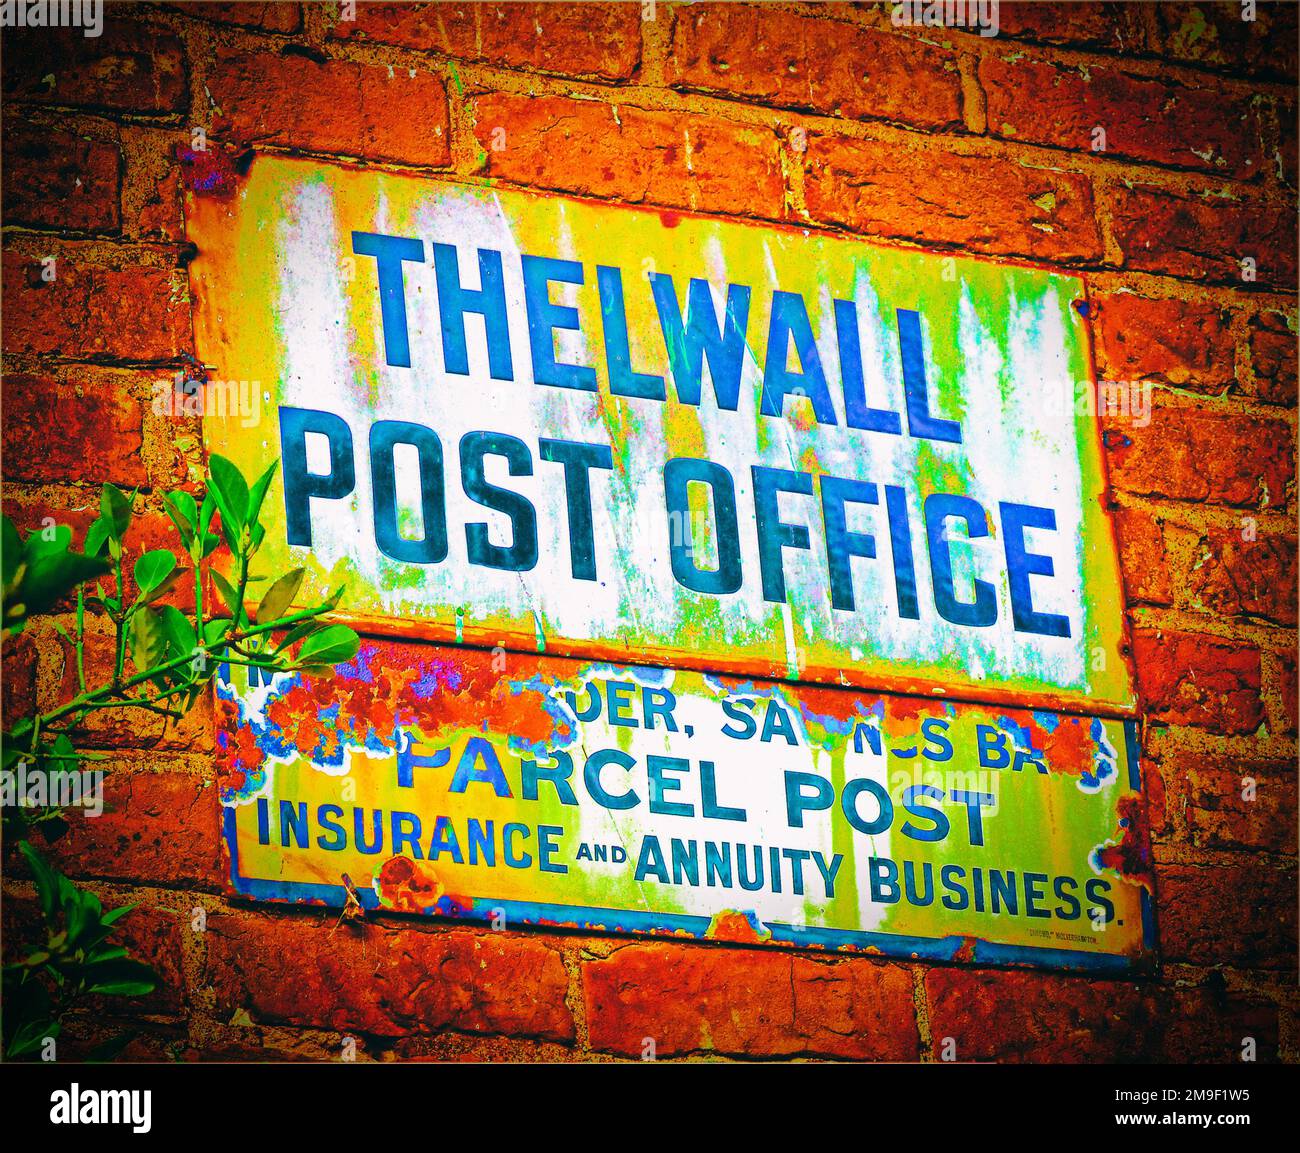 L'ufficio postale storico del vecchio villaggio di Thelwall, Bell Lane, Thelwall, South Warrington, Cheshire, INGHILTERRA, REGNO UNITO, WA4 2SU Foto Stock